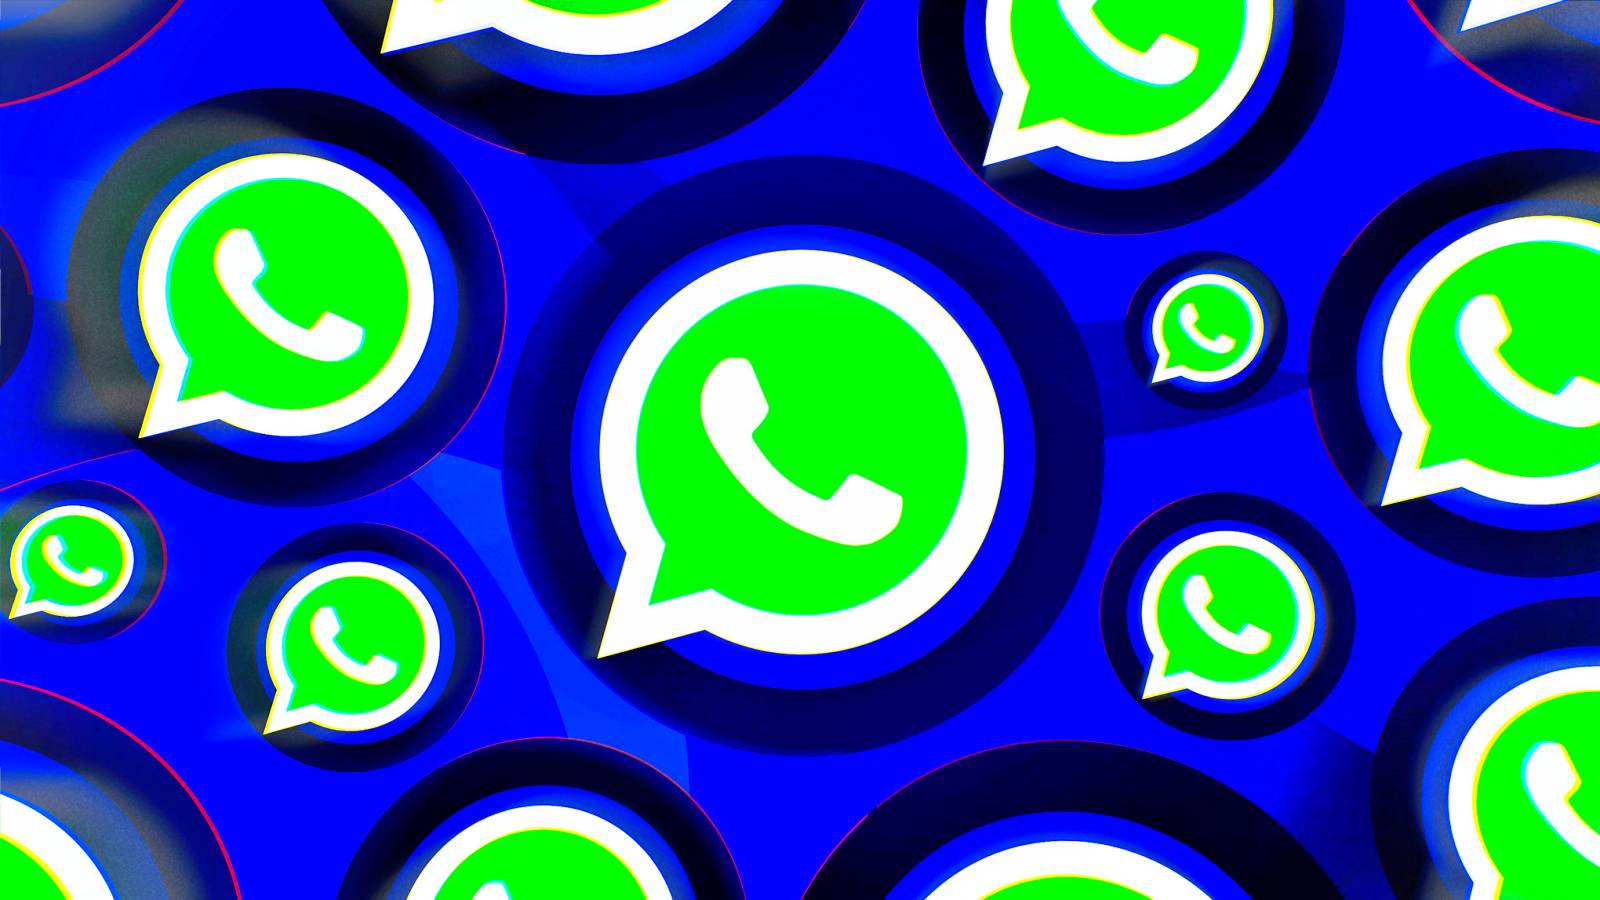 WhatsApp 2 uudet salaiset muutokset iPhone Android